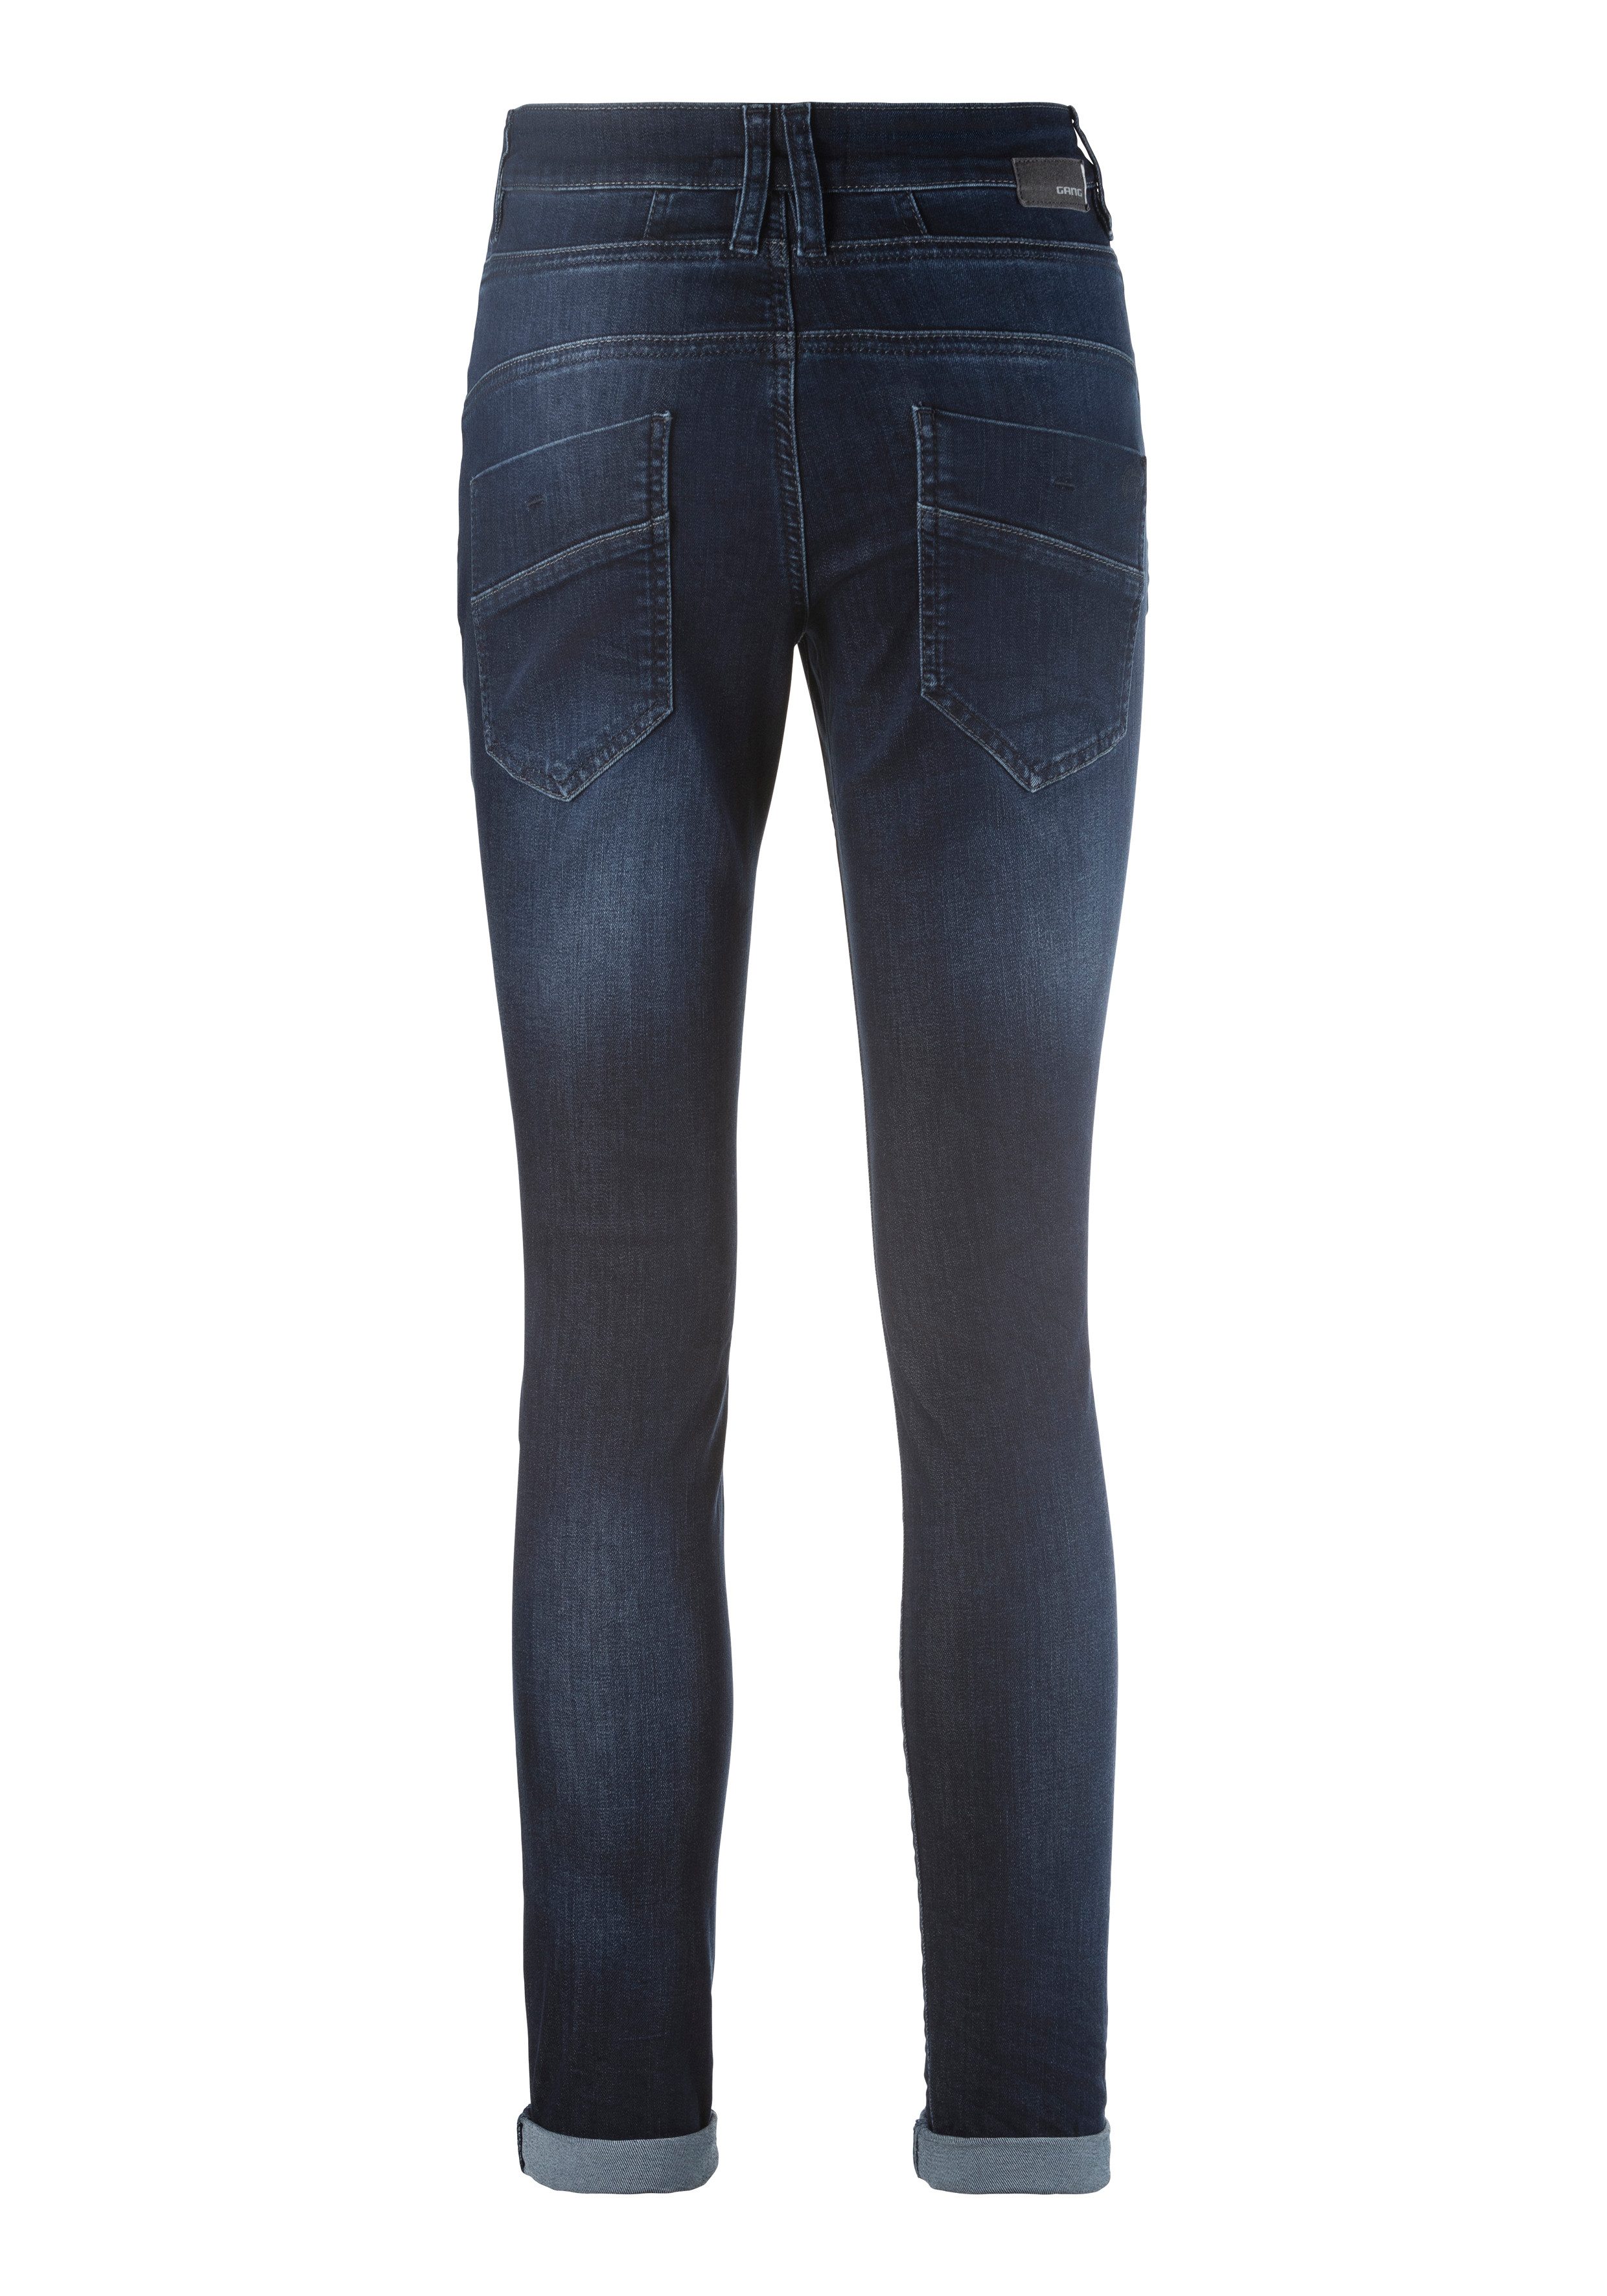 GANG Slim fit jeans 94New Georgina met karakteristieke figuurnaden in de breedte over het bovenbeen